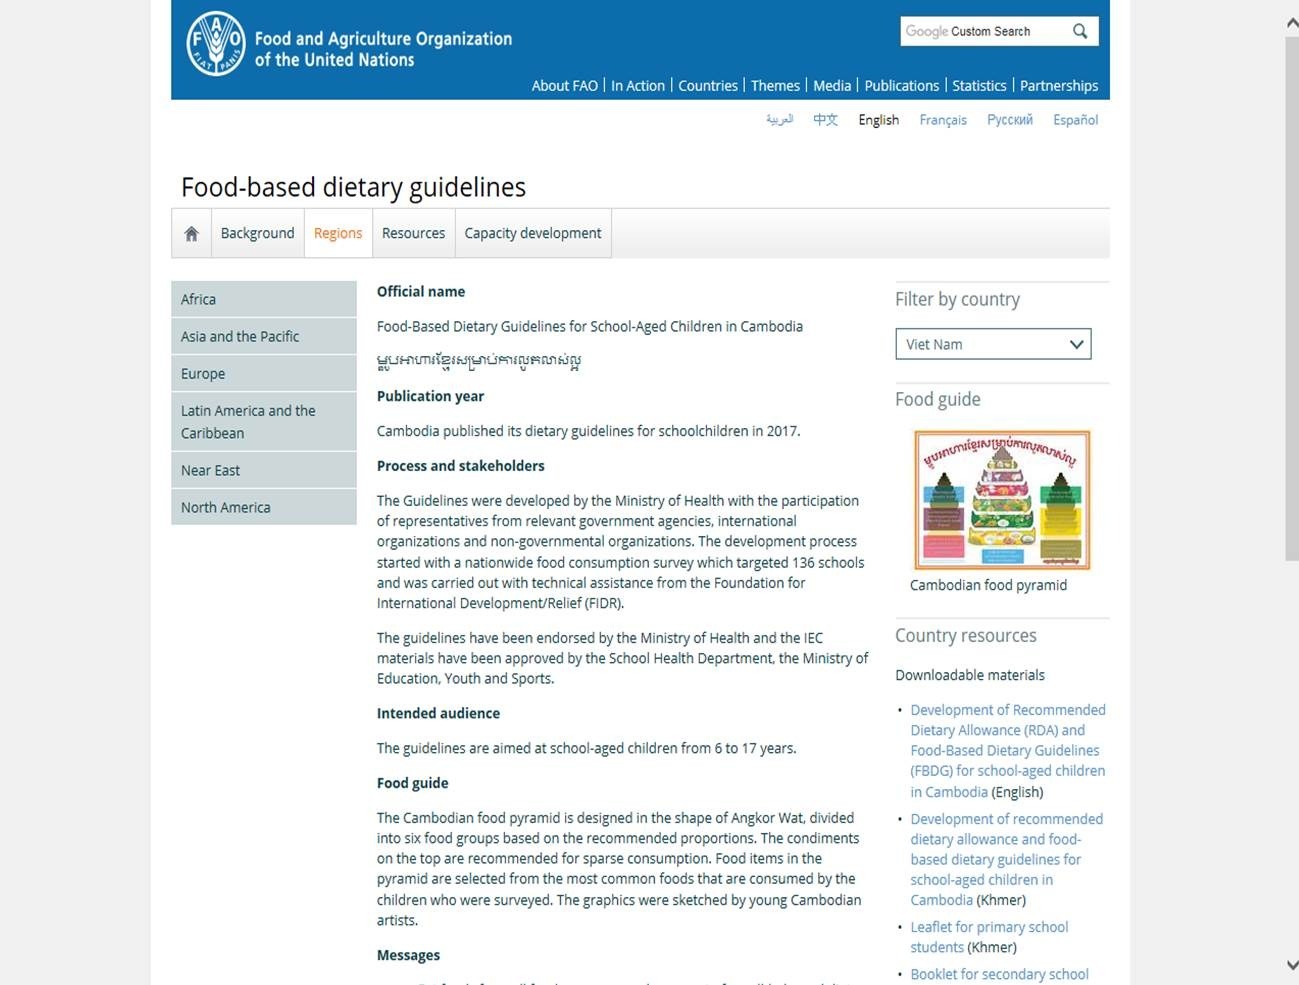 カンボジア版食生活指針がFAOのサイトに掲載されました